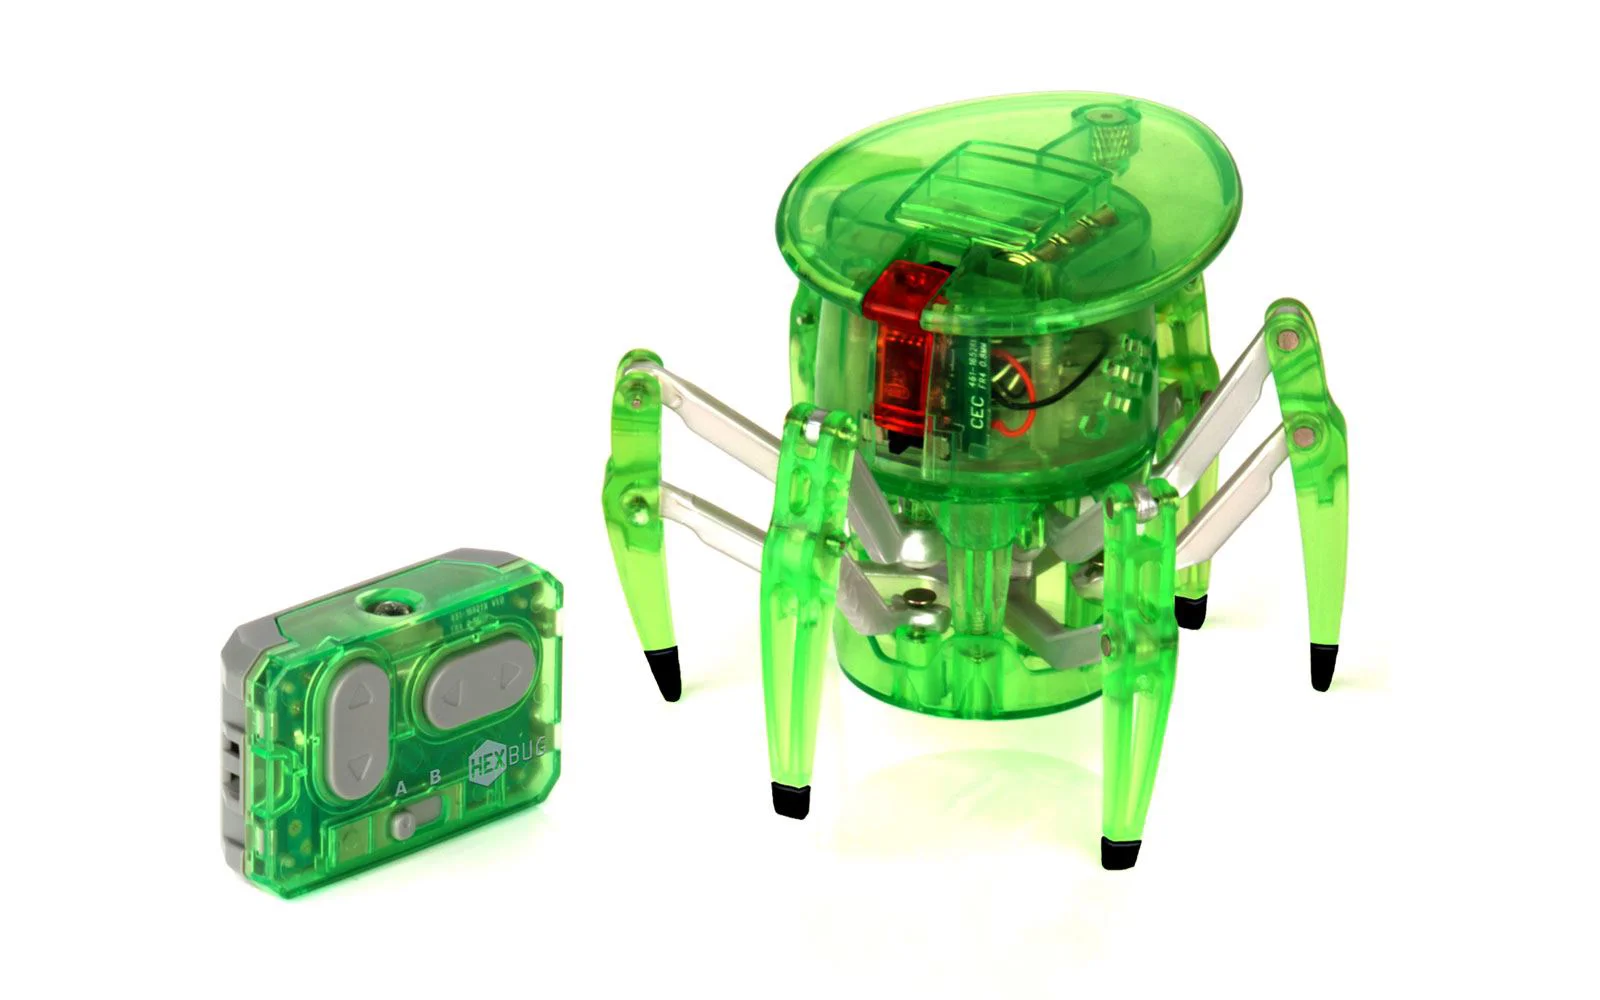 Электронная игрушка Hexbug Паук Микроробот с радиоуправлением